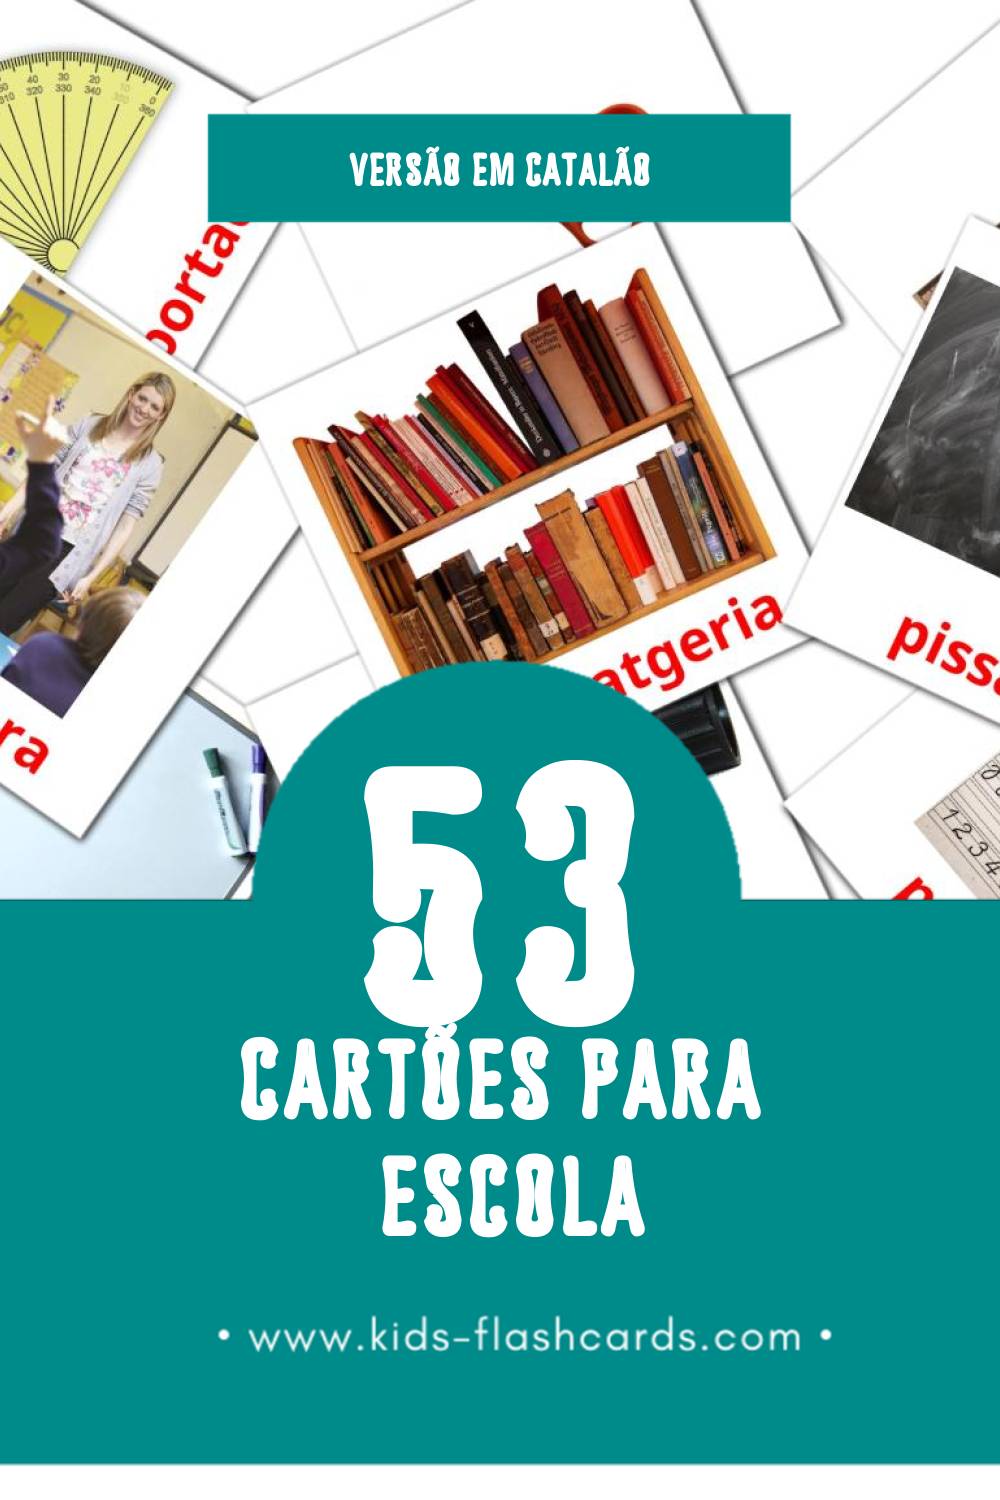 Flashcards de Escola Visuais para Toddlers (36 cartões em Catalão)